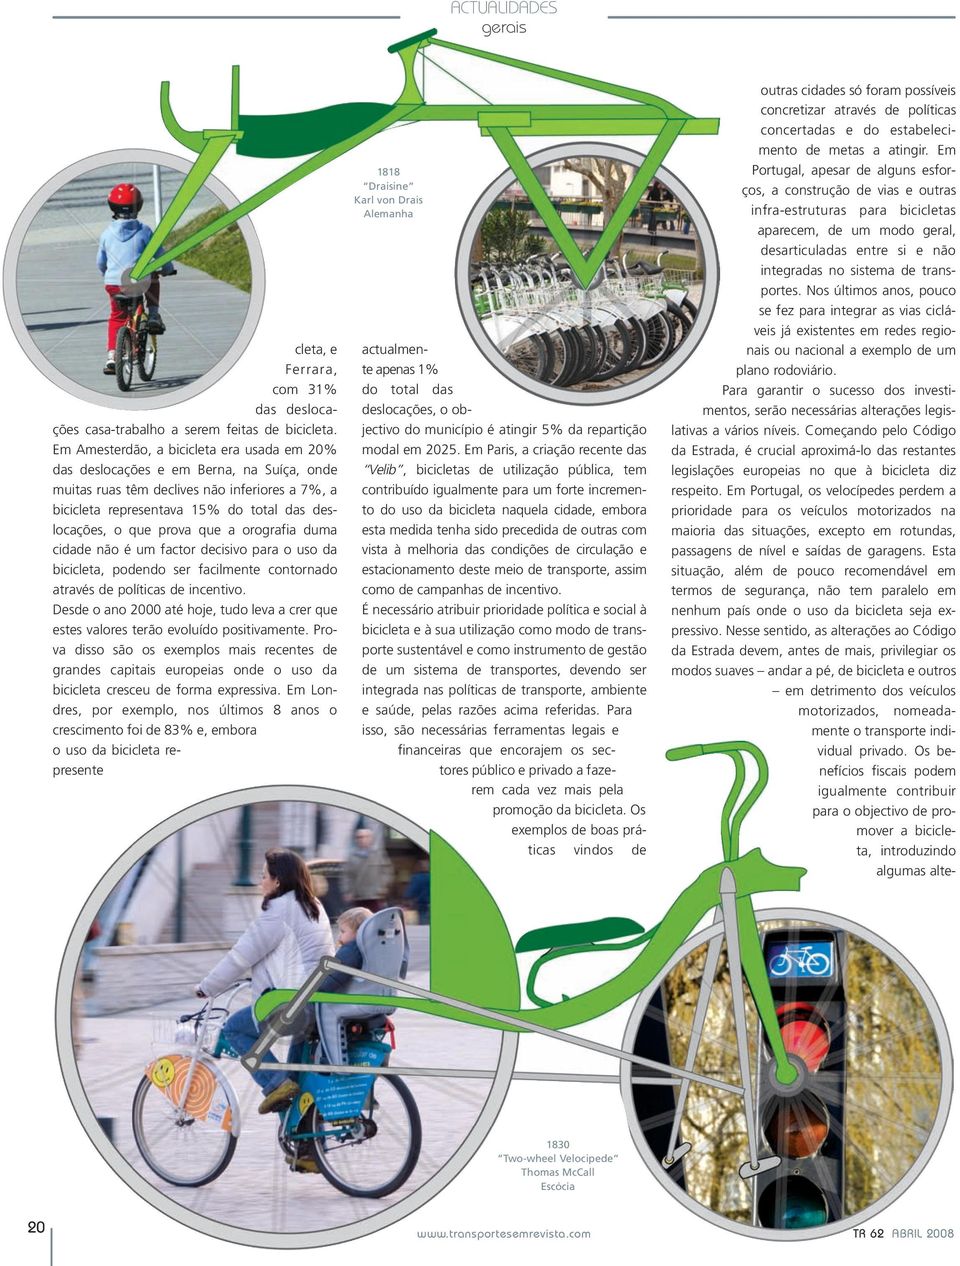 que a orografia duma cidade não é um factor decisivo para o uso da bicicleta, podendo ser facilmente contornado através de políticas de incentivo.